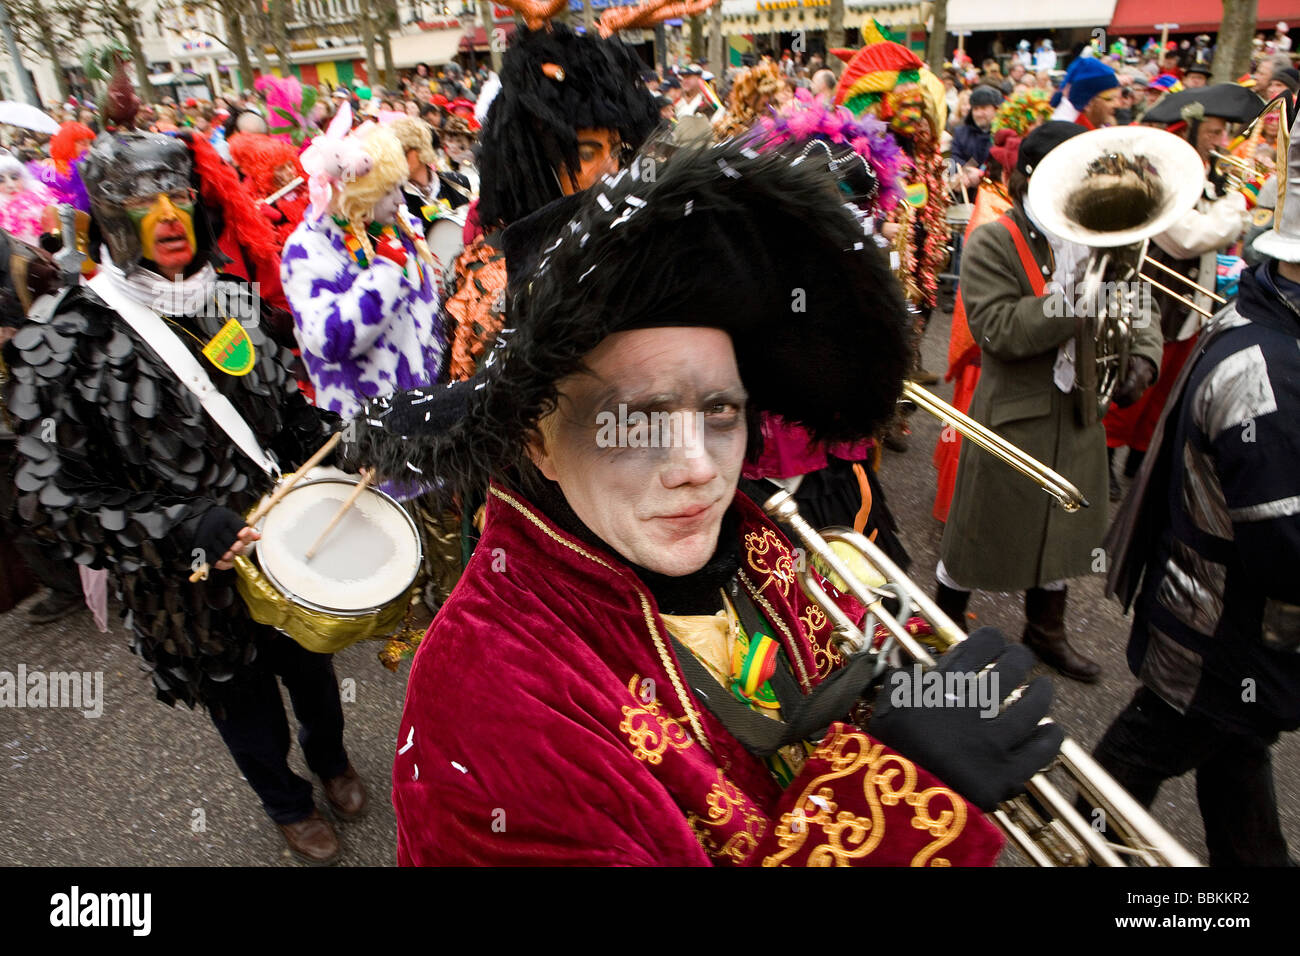 Karneval in Maastricht, die dieses Festival anders als in anderen Teilen von Holland, ist da gibt es rund 100 Bands spielen live Fanfara Musik im Zentrum Stadt, die meisten von den Feierlichkeiten nehmen Platz draußen auf den Straßen und Plätzen in drei Tagen feiern Menschen tanzen Chat Witz und vor allem viel Alkohol trinken Stockfoto